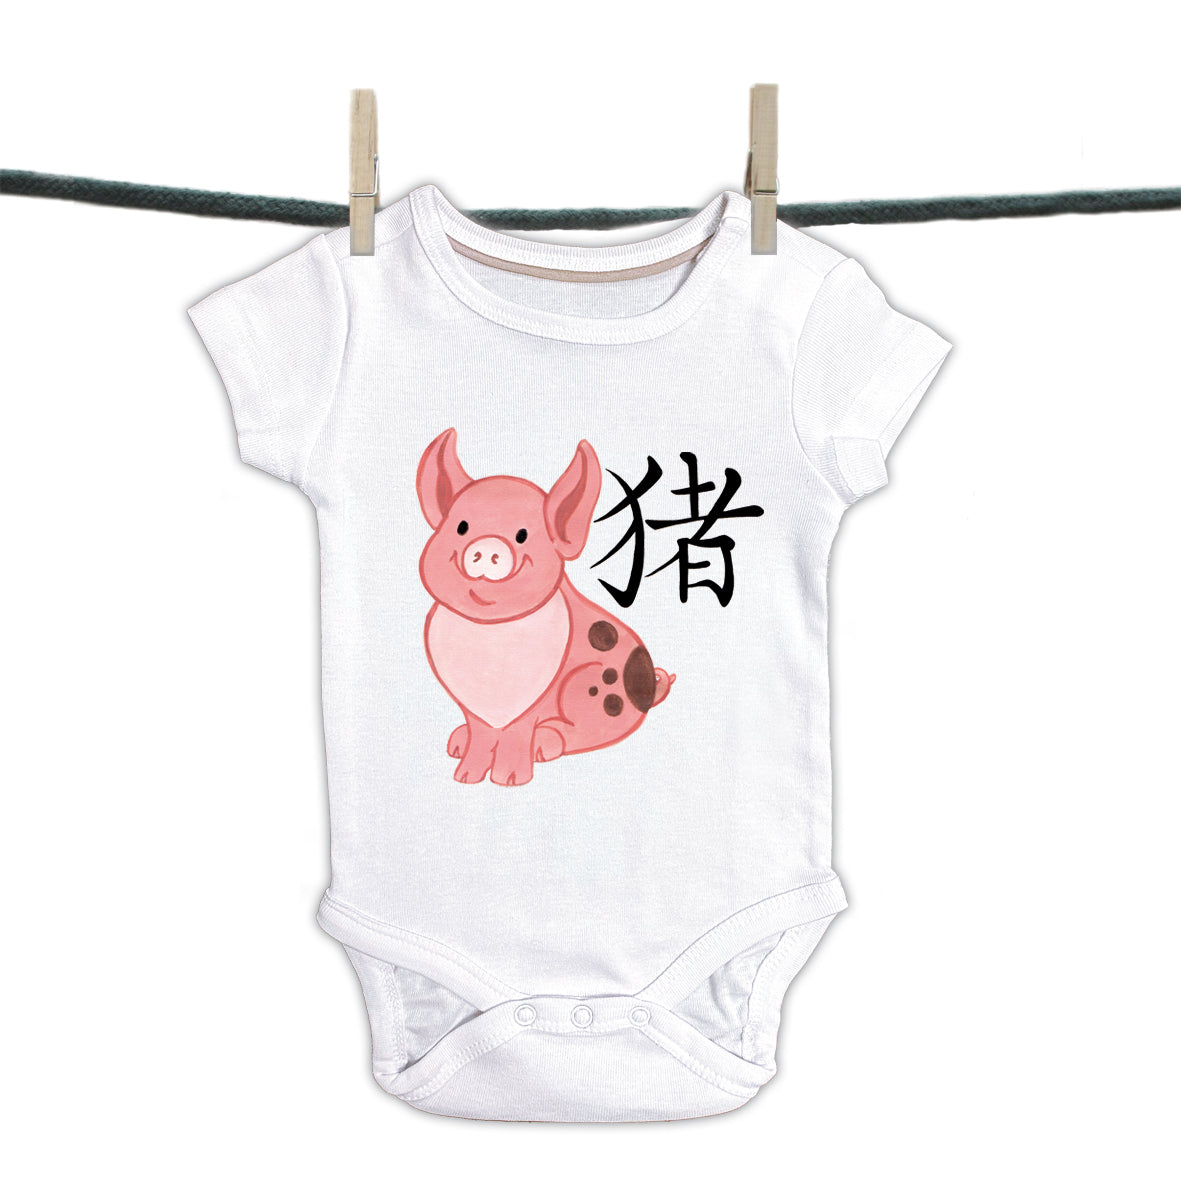 Babyromper Chinese Tekens Collectie - Varken